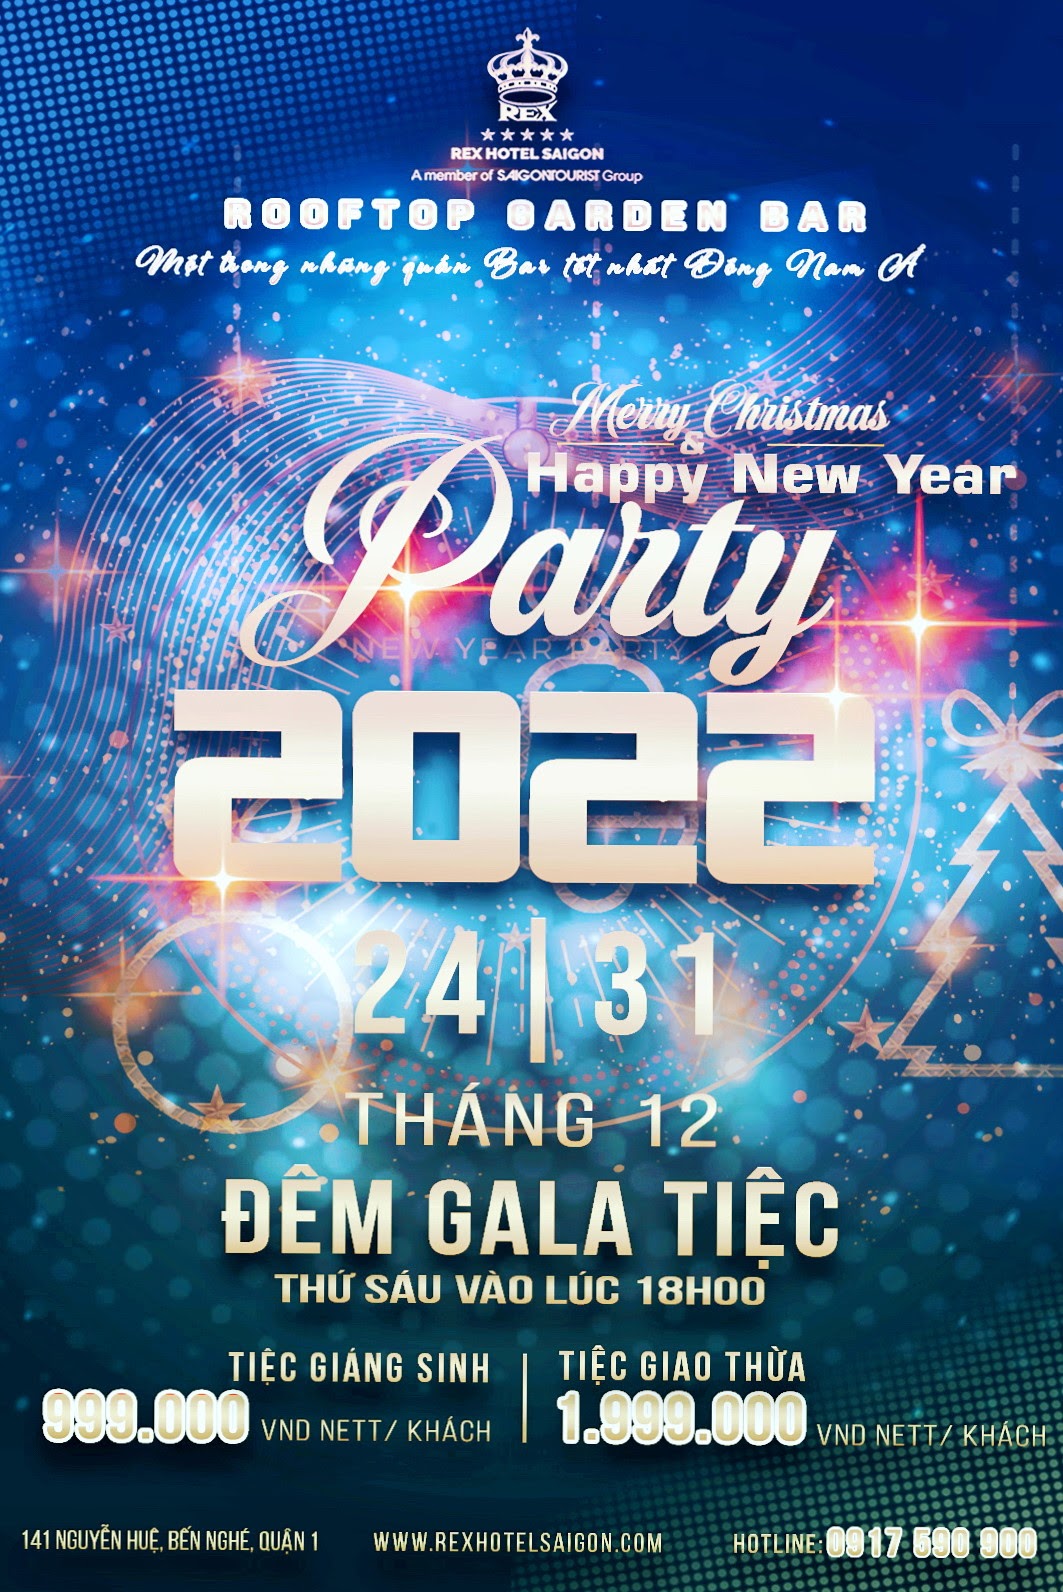 Đêm Giáng sinh diệu kỳ và Dạ tiệc đón năm mới 2022 tại Rex Hotel Saigon - 2